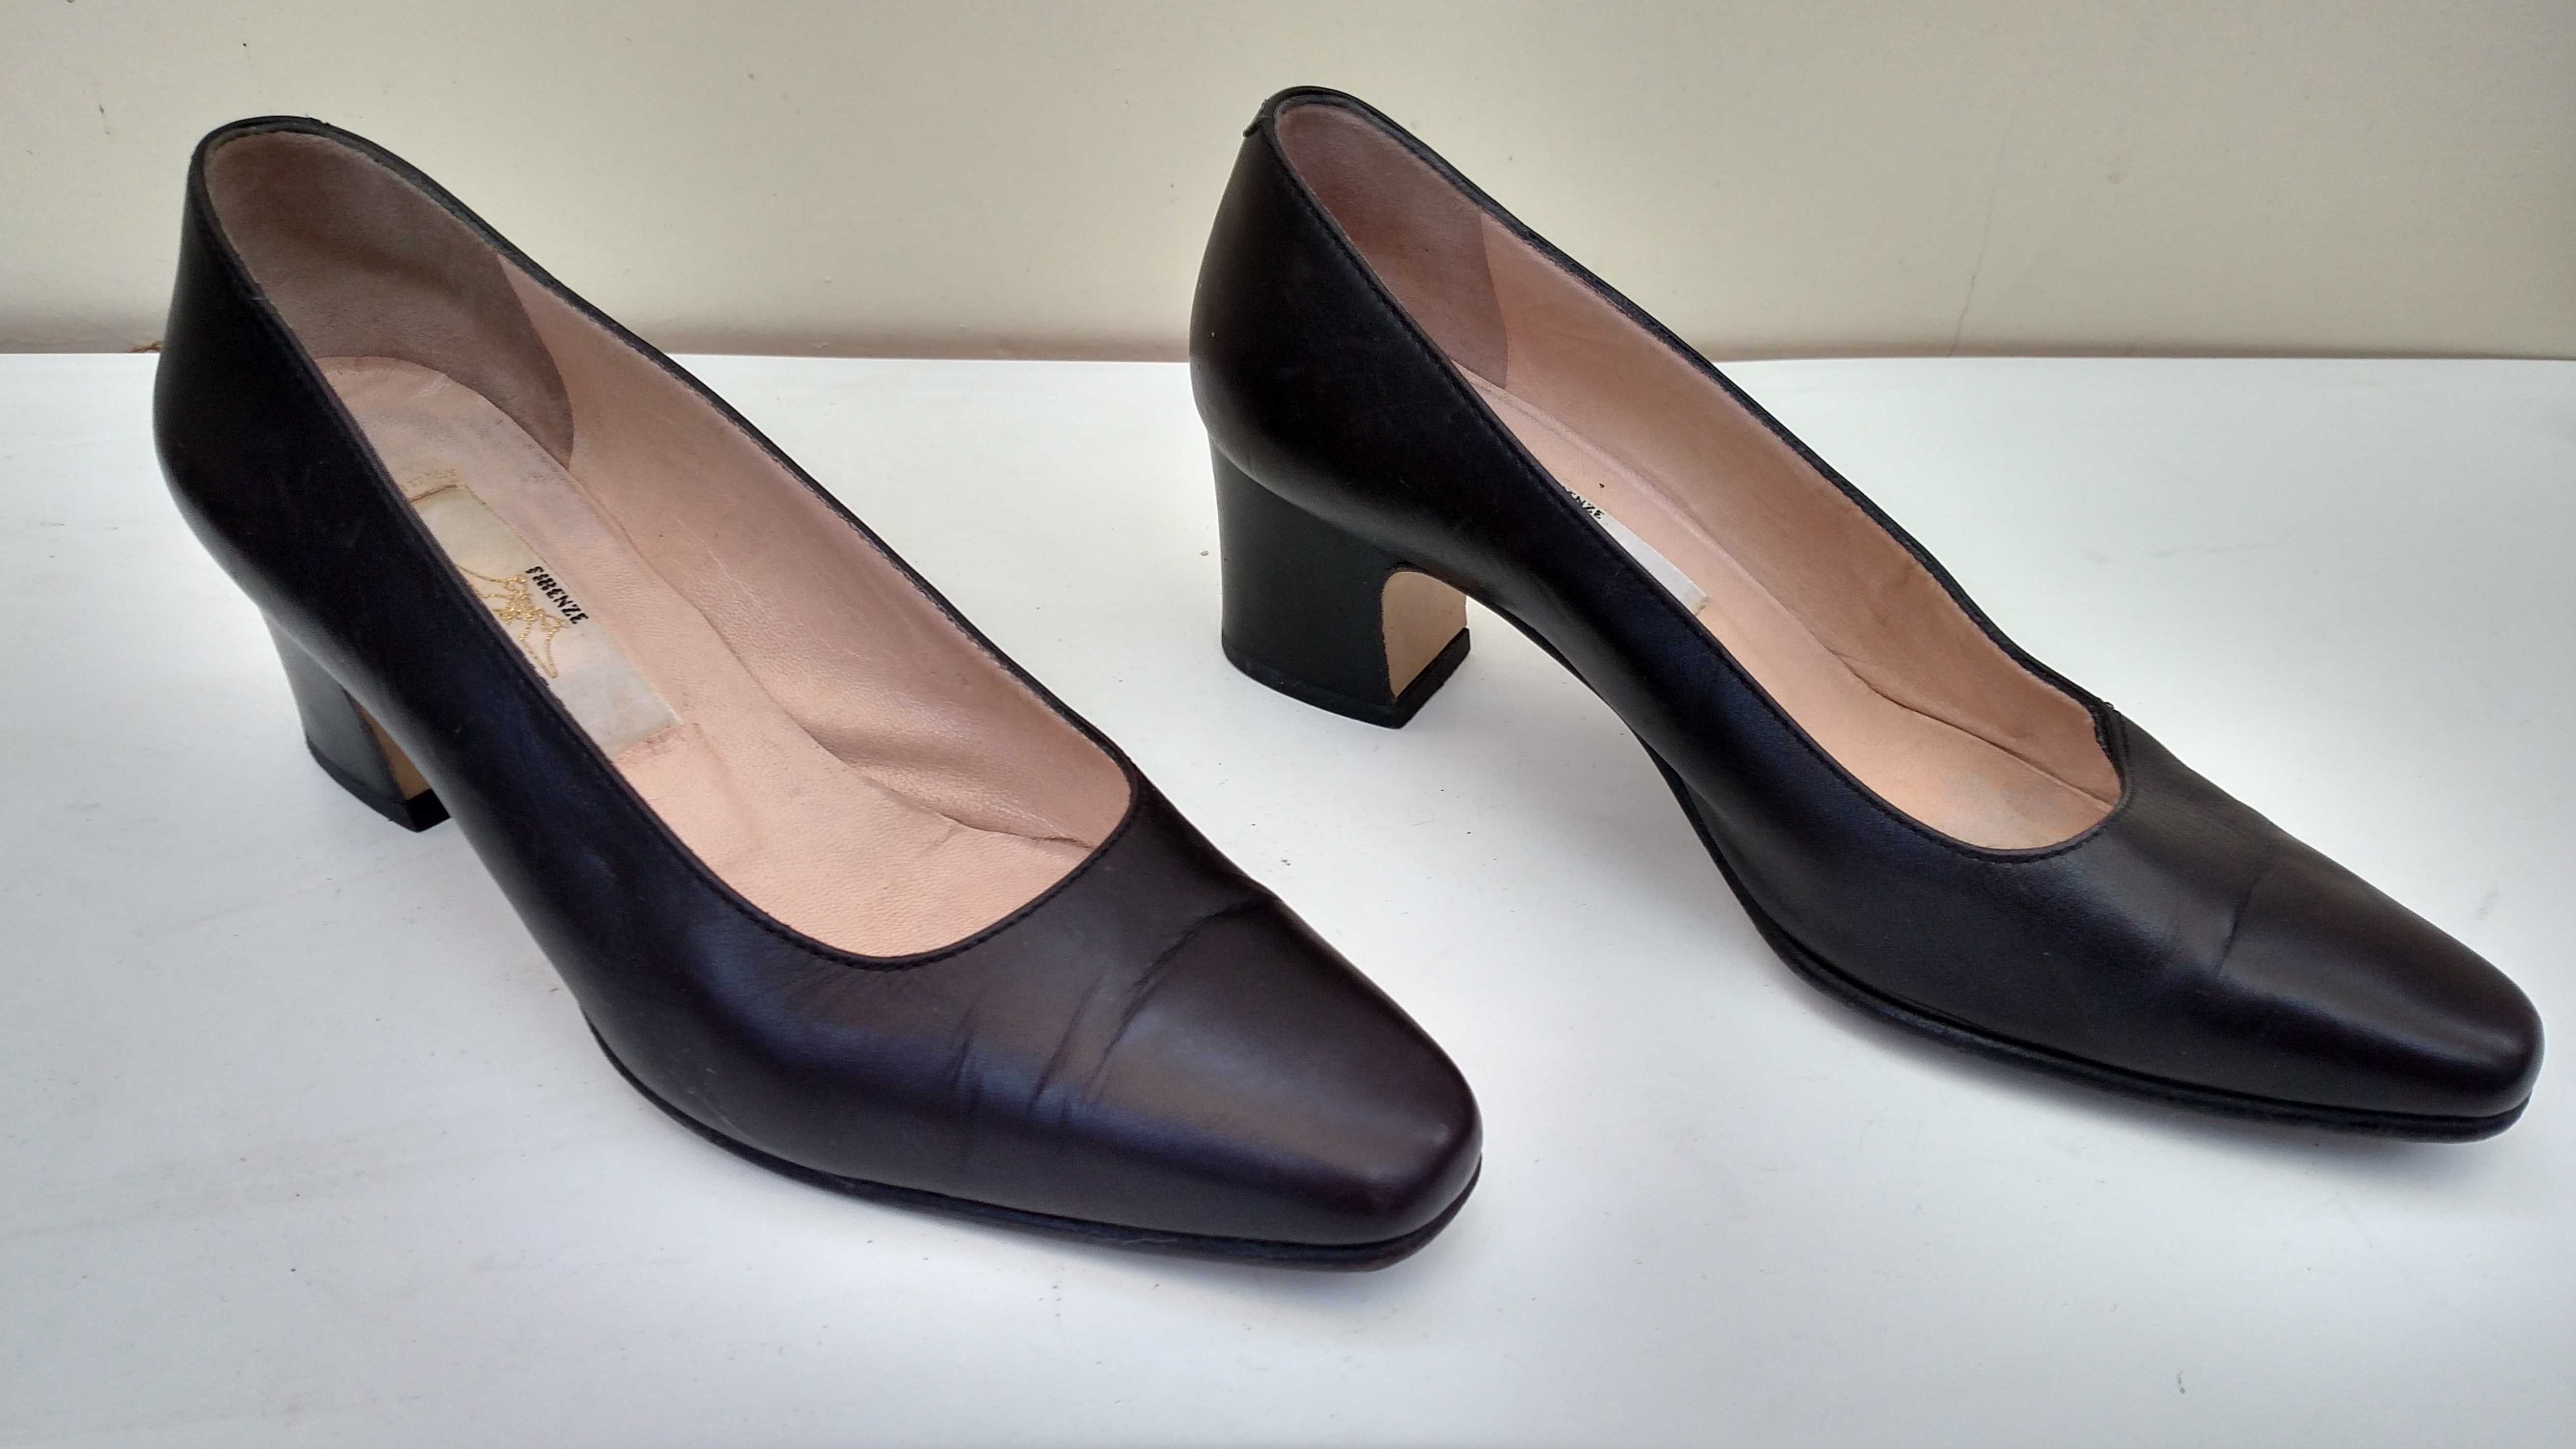 Продам женские туфли "Firenze" размер 36,5 Италия